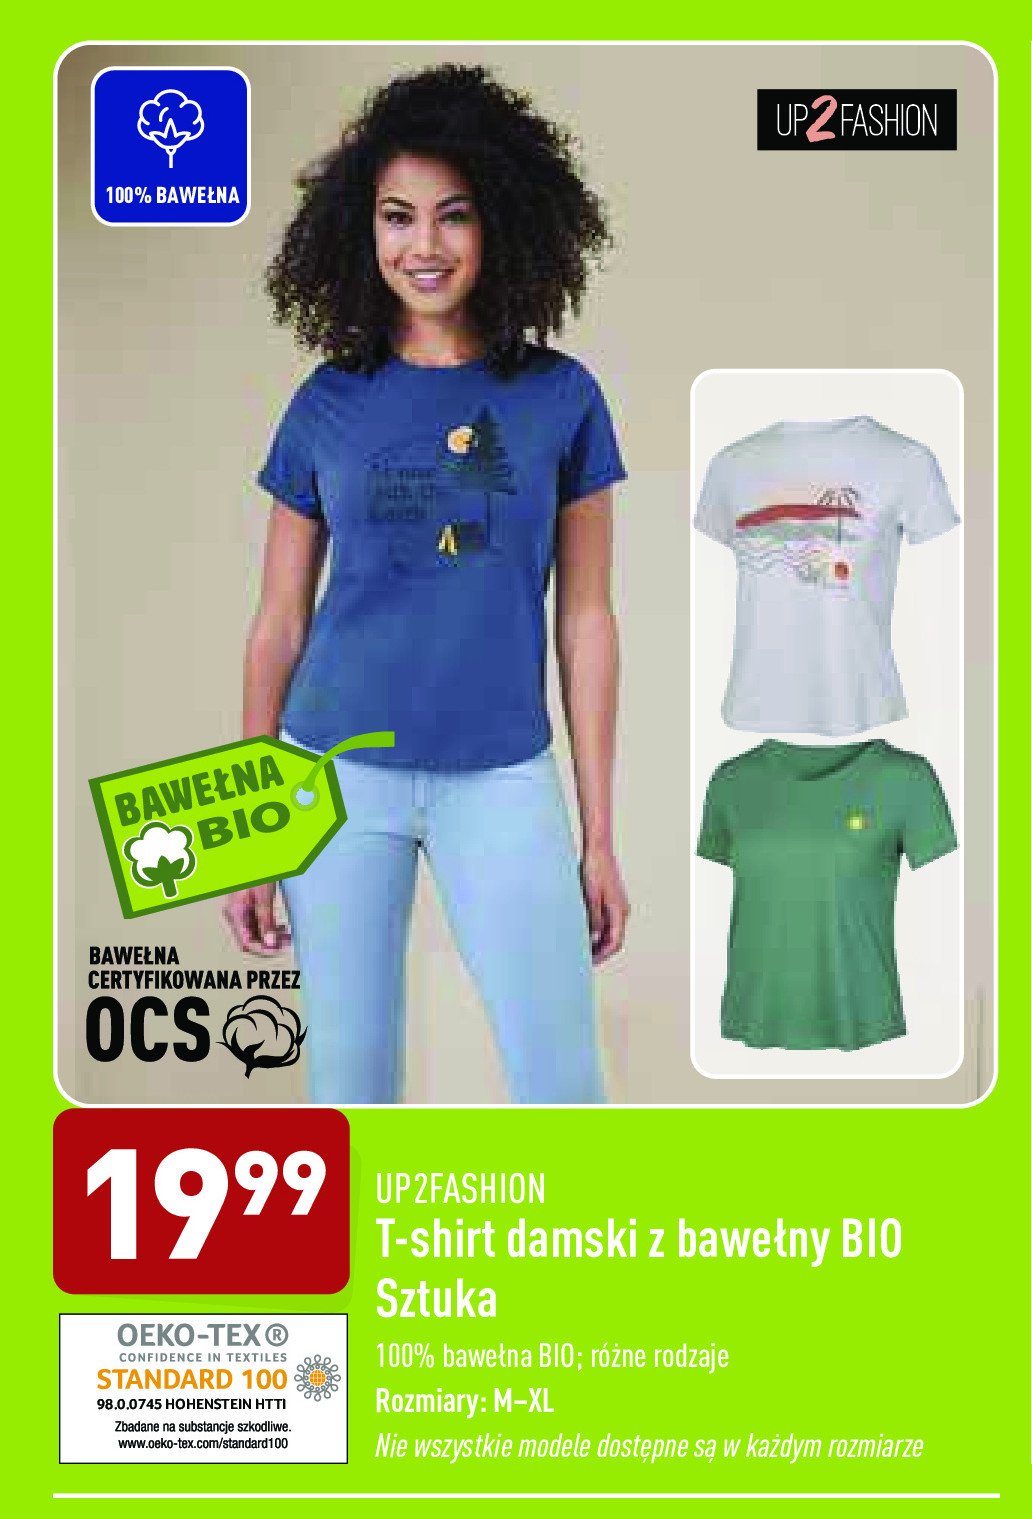 T-shirt damski z bawełny bio Up2fashion promocja